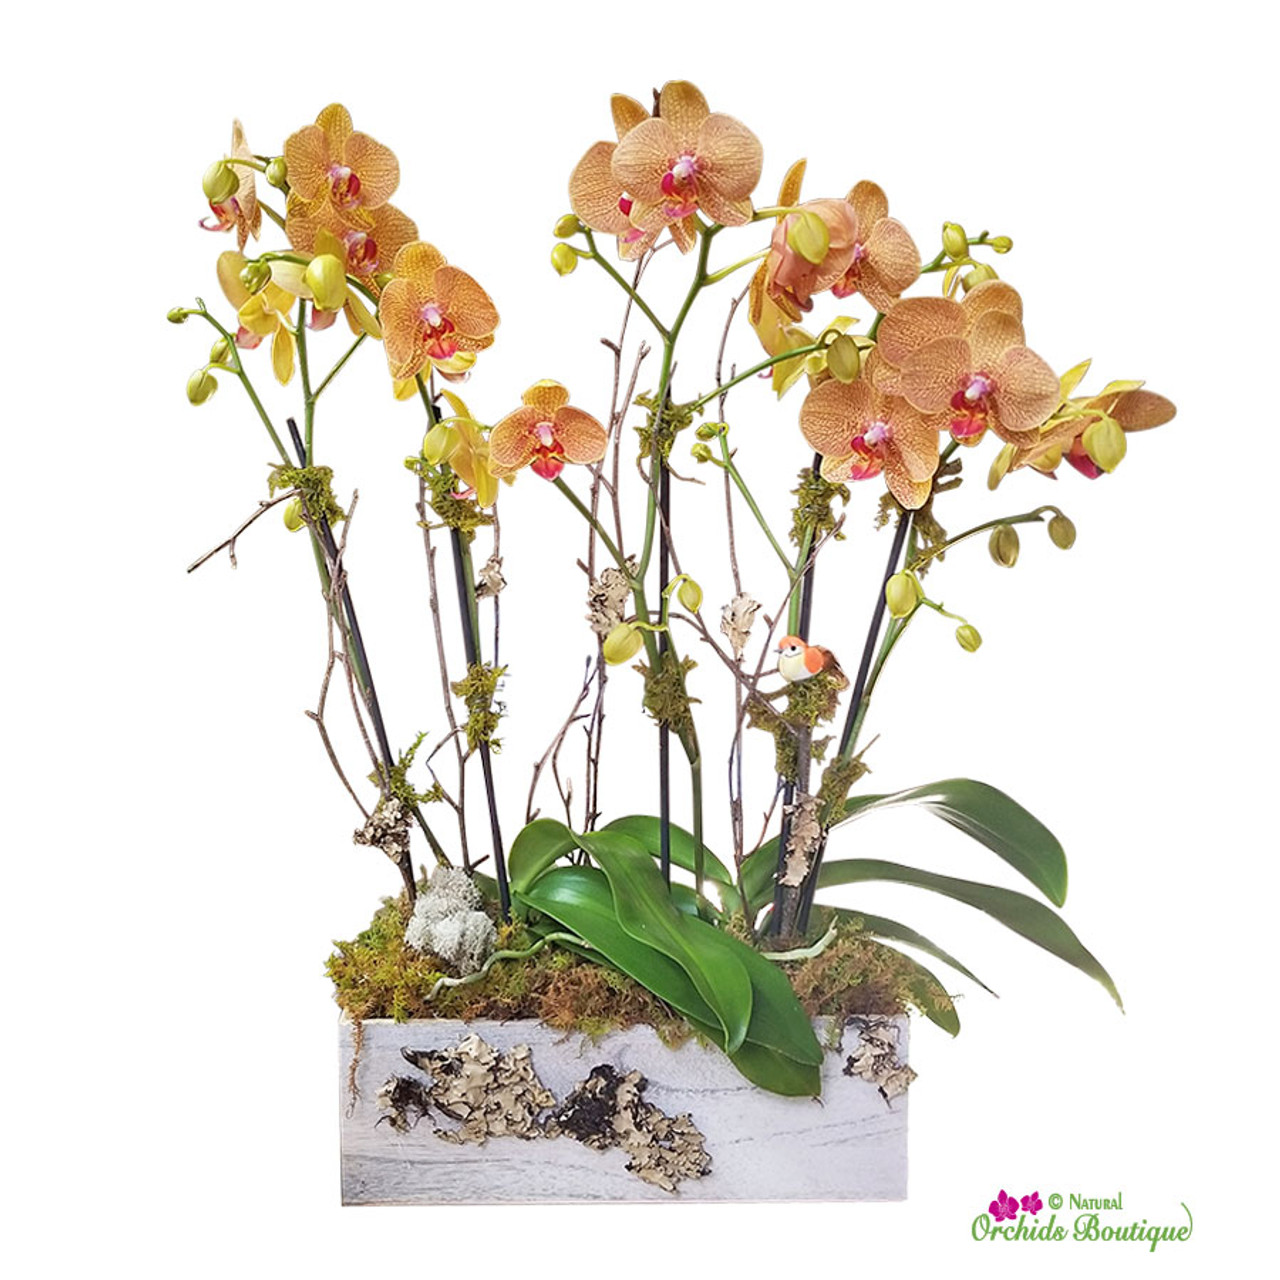 Large Orchid Arrangements Miami - Natural Orchids Boutique